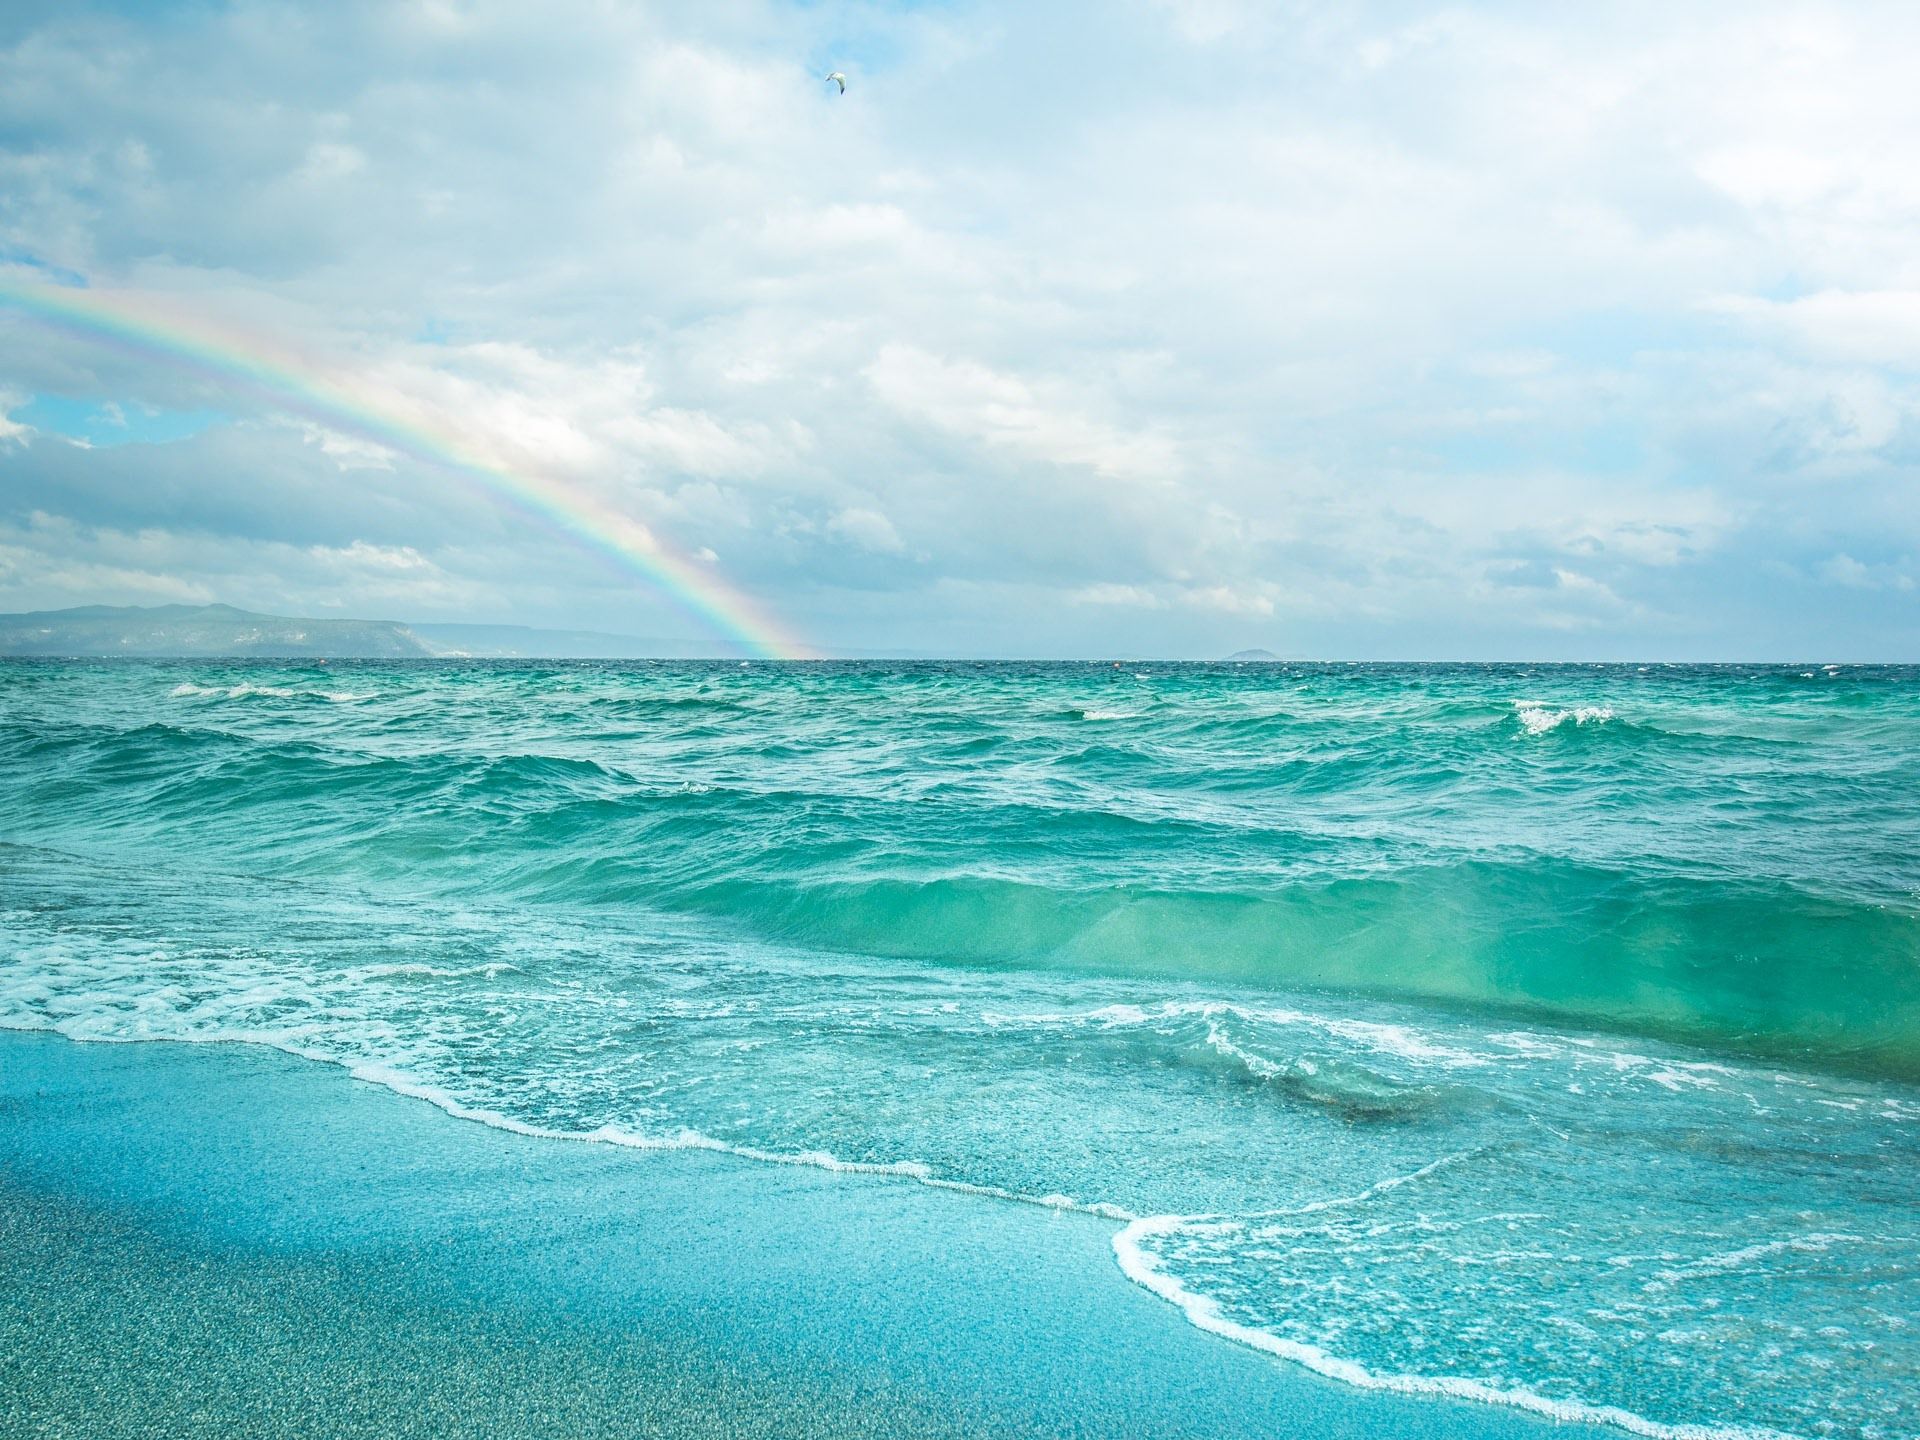  Die Besten Hintergrundbild 1920x1440. Blaues Meer, Strand, Wasserwellen, Regenbogen 1920x1440 HD Hintergrundbilder, HD, Bild